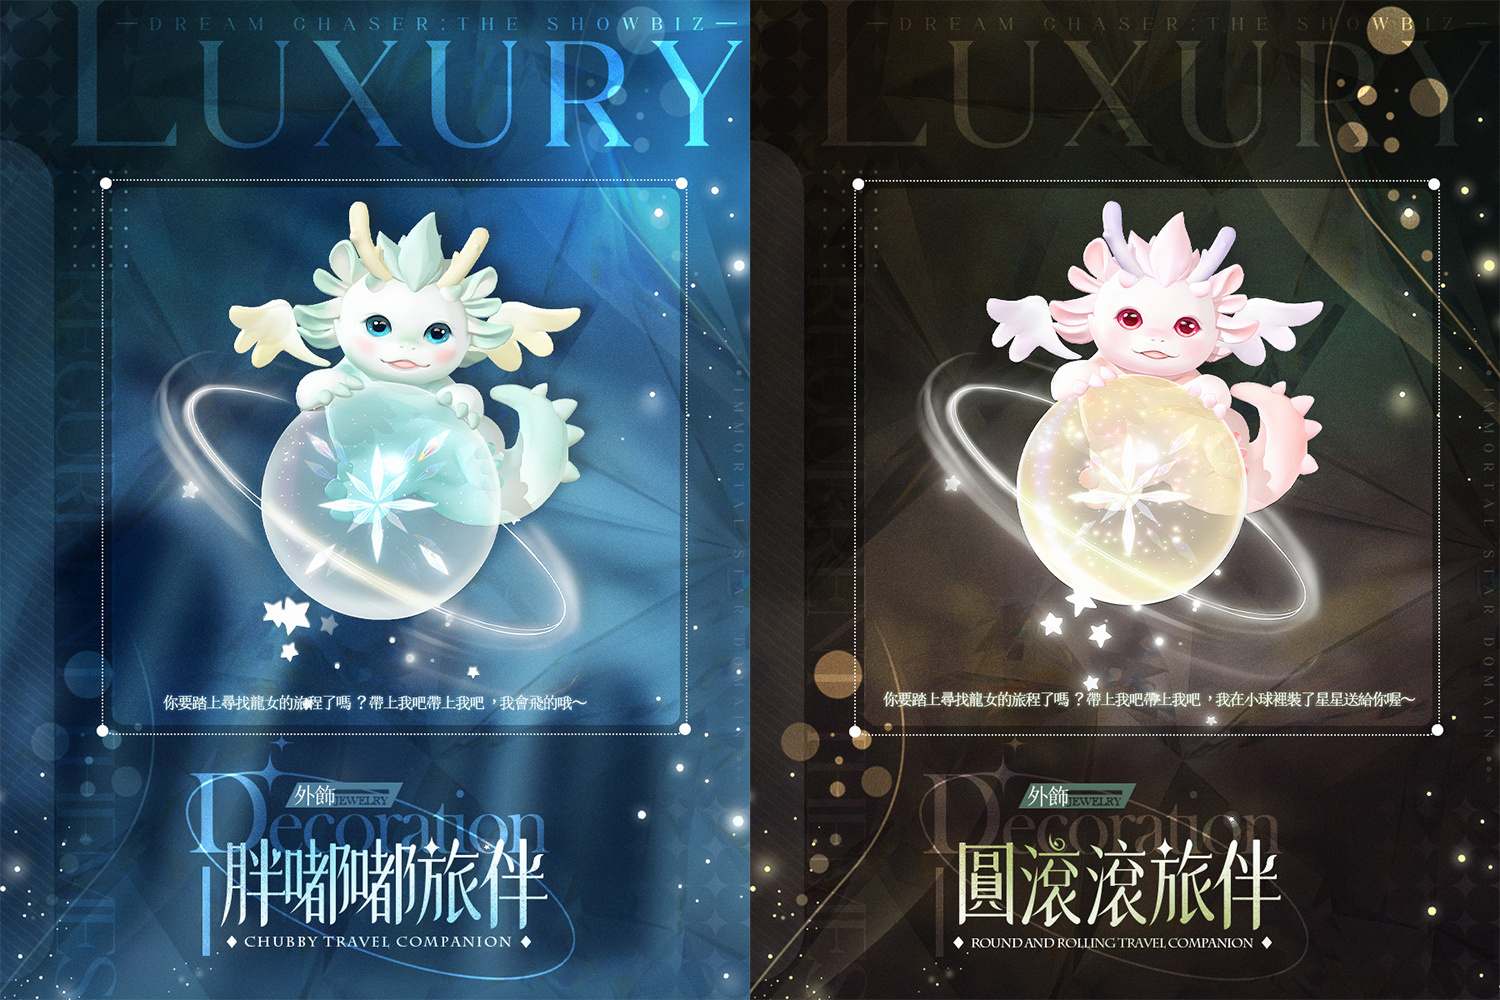 《绝对演绎》龙年春节盛典揭开序幕推出一系列春节改版玩法